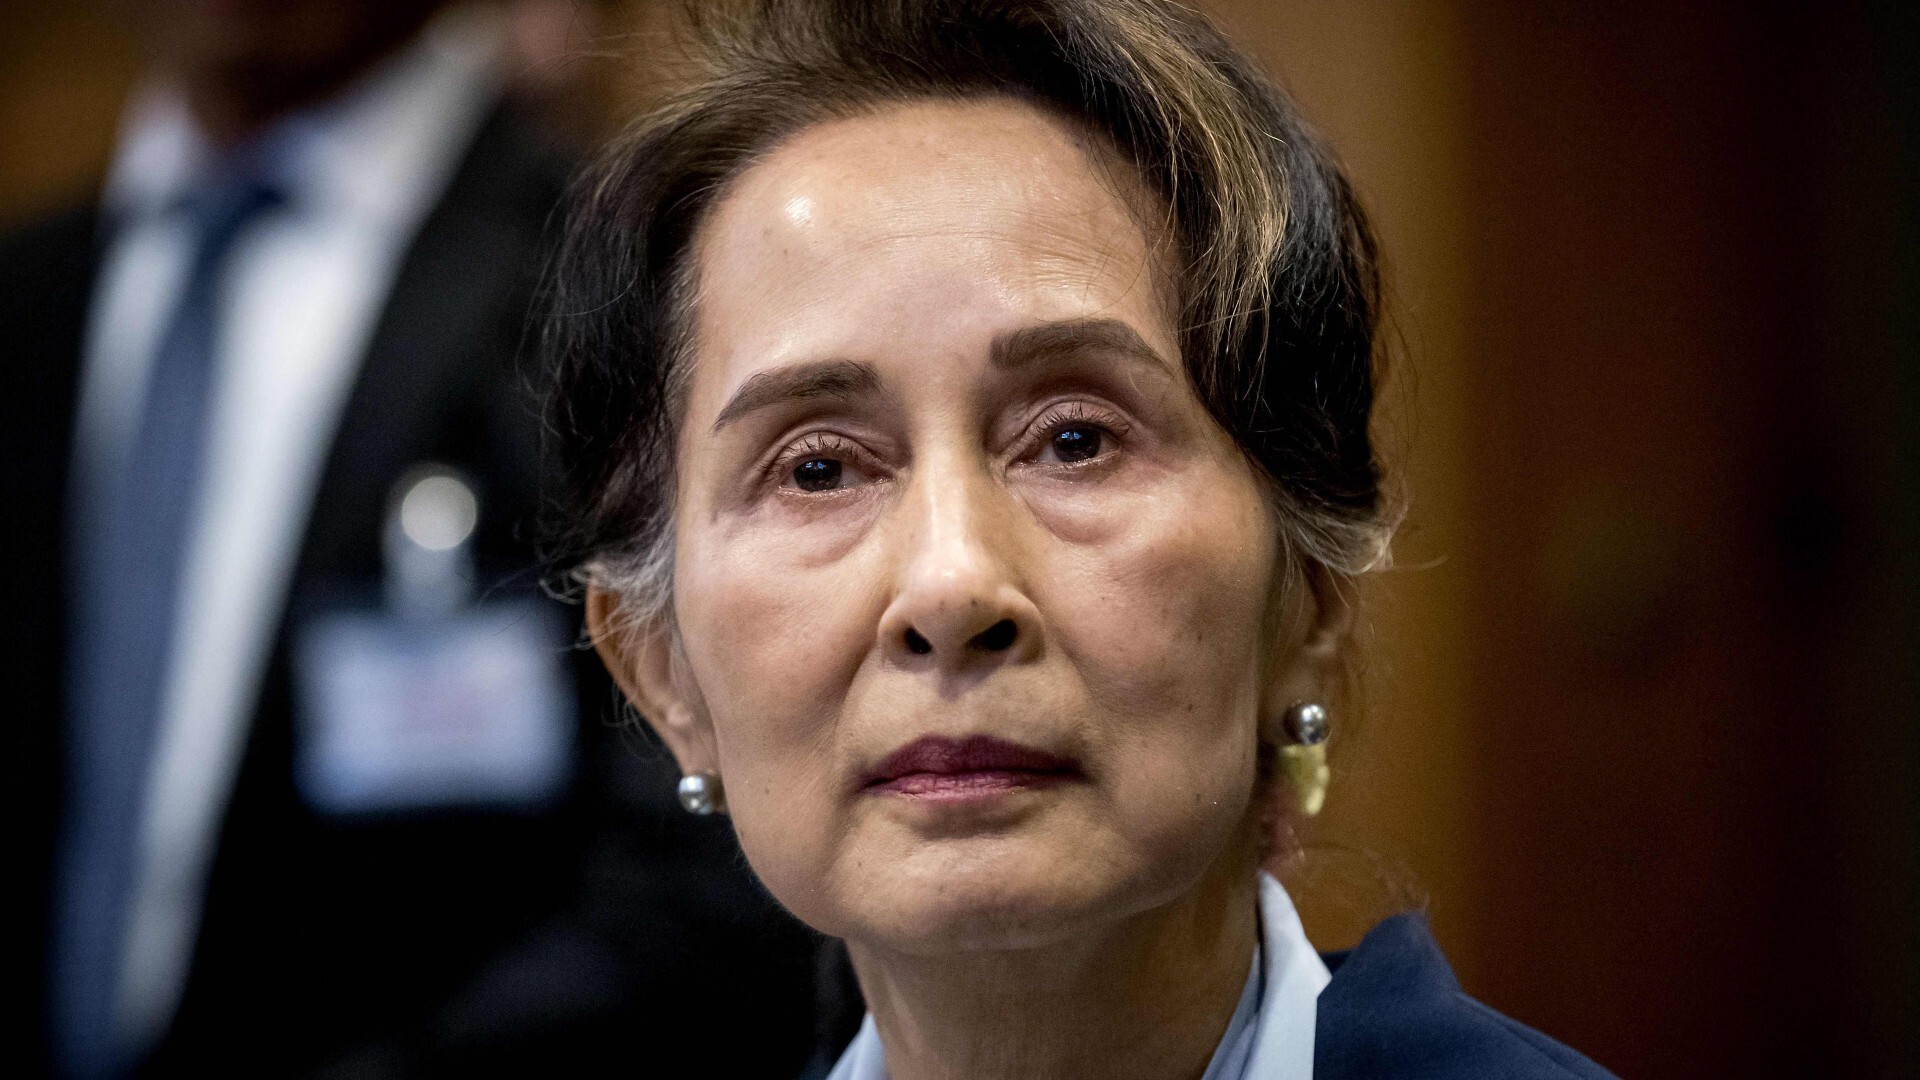 La junta birmana reduce pena de cárcel de Aung San Suu Kyi en plena incertidumbre política